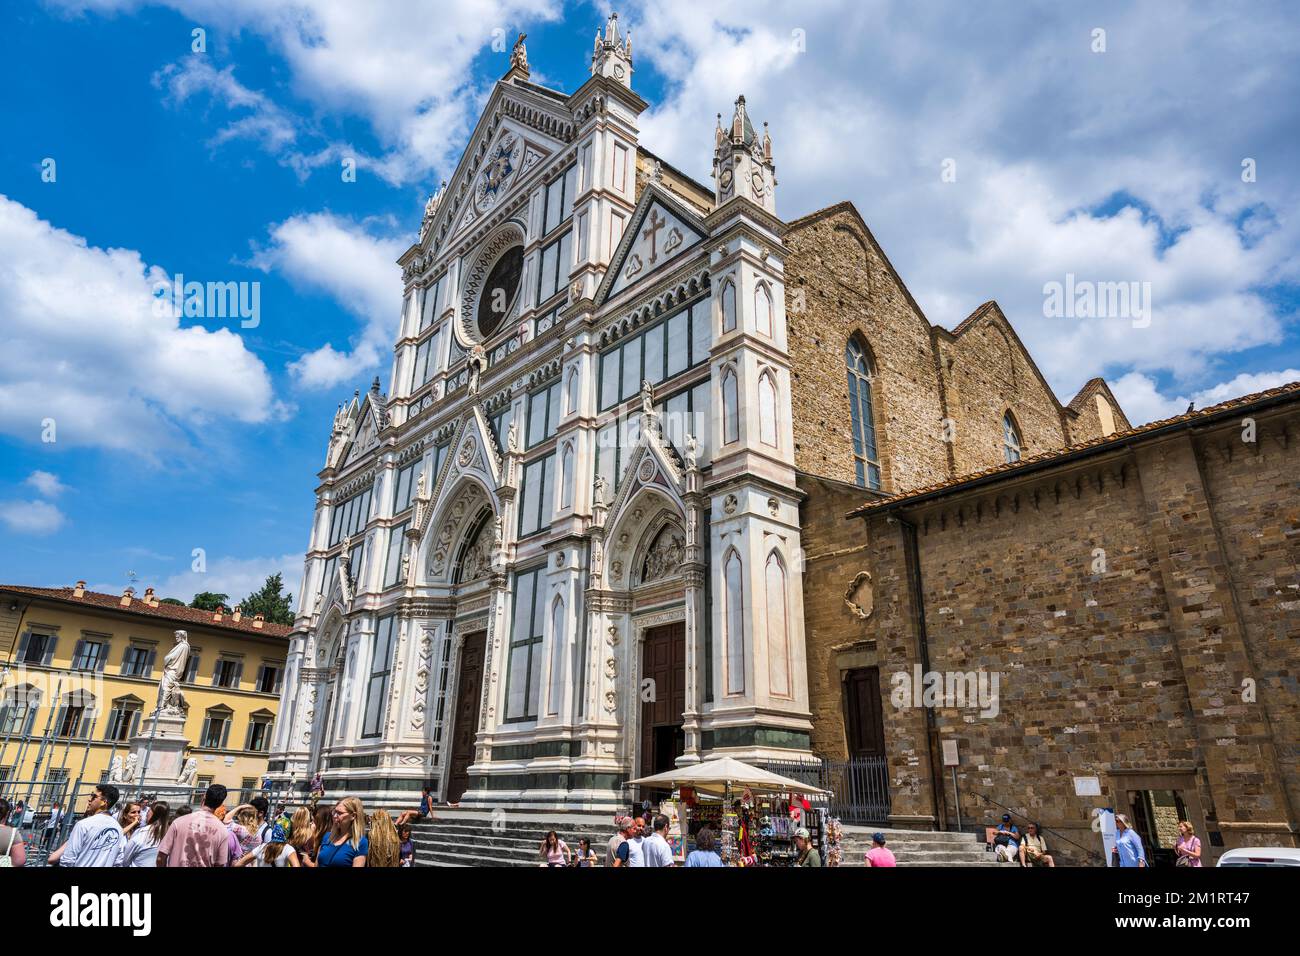 Façade Of The Basilica Di Santa Croce Di Firenze From Piazza Di Santa Croce In Florence Tuscany 3977